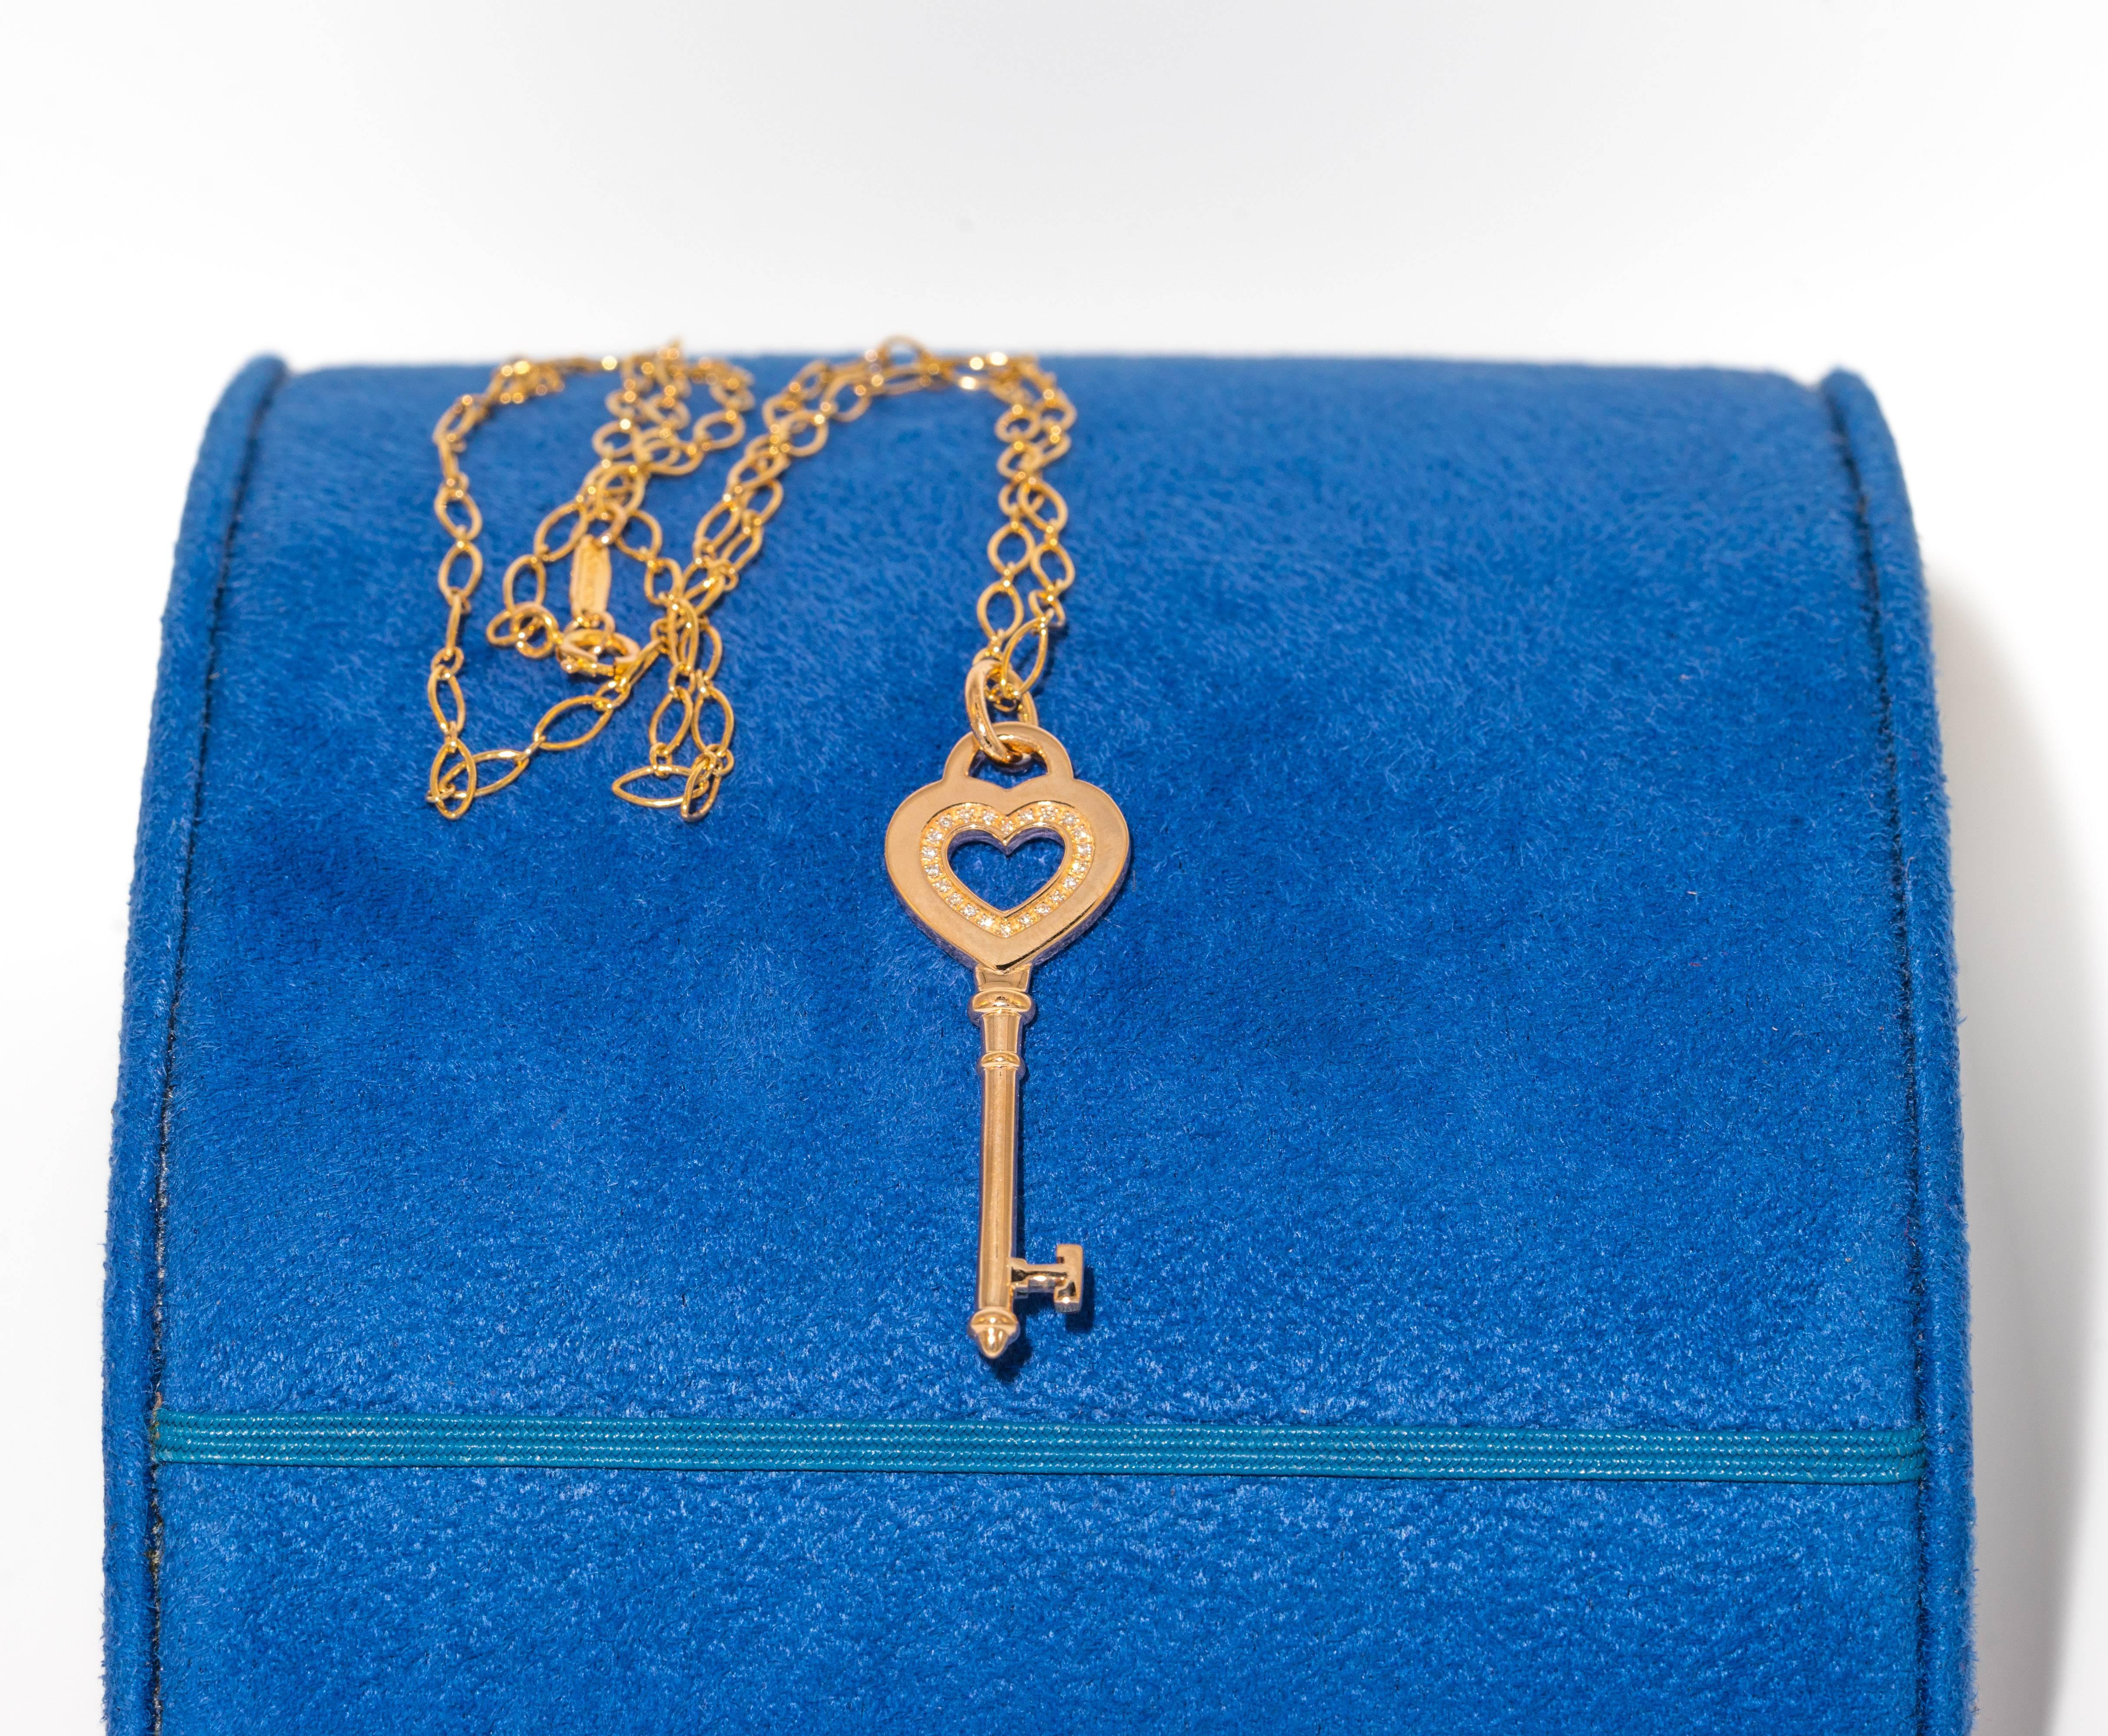 tiffany heart key necklace gold